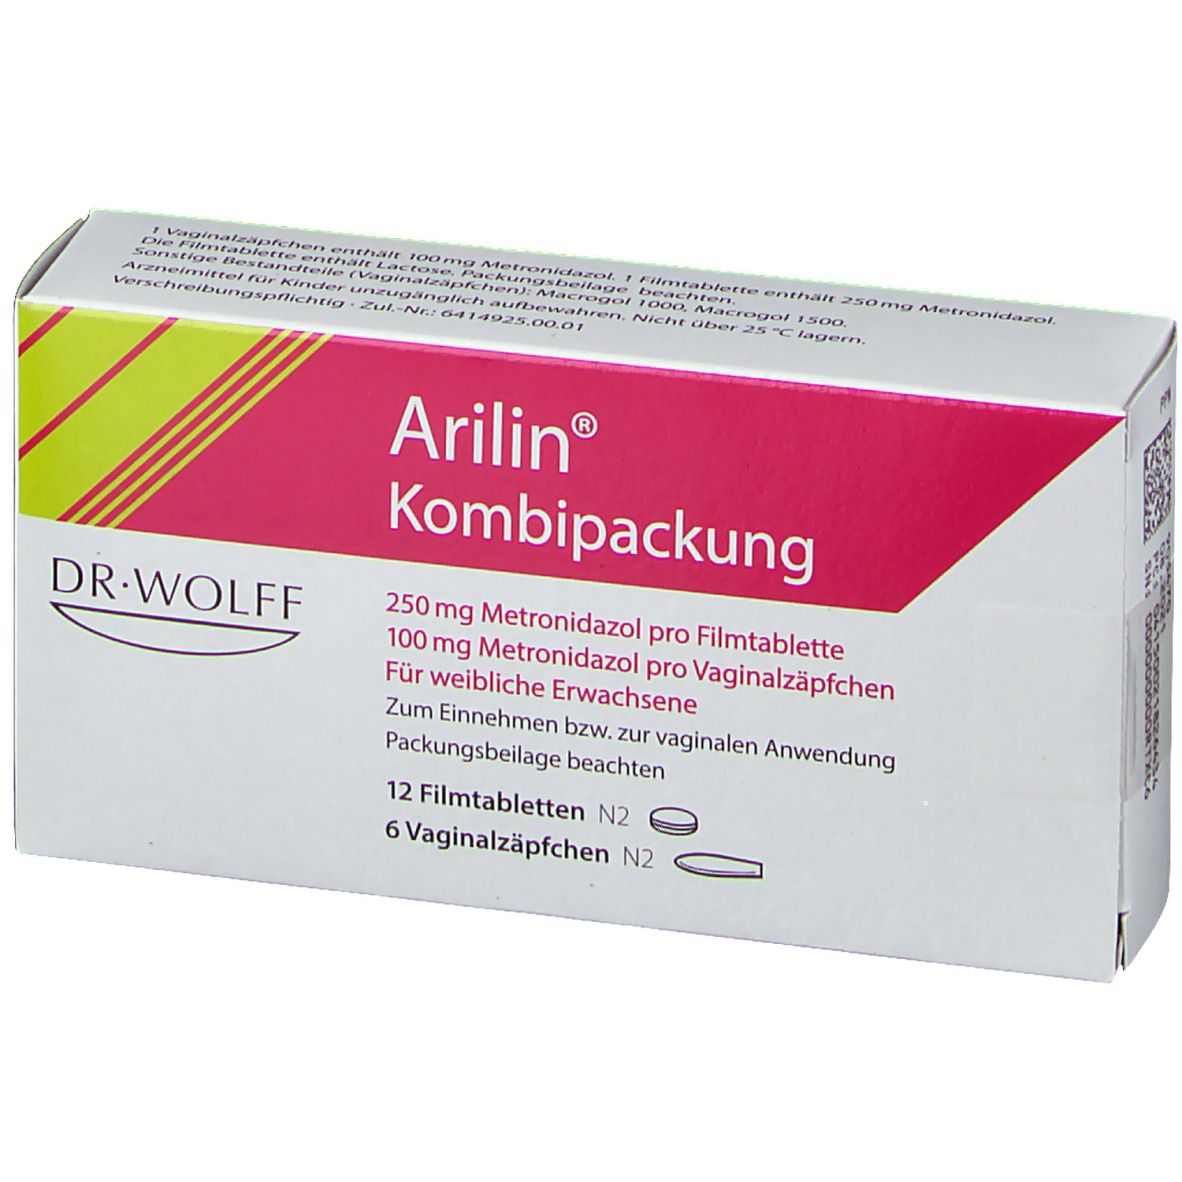 Arilin® Kombipackung